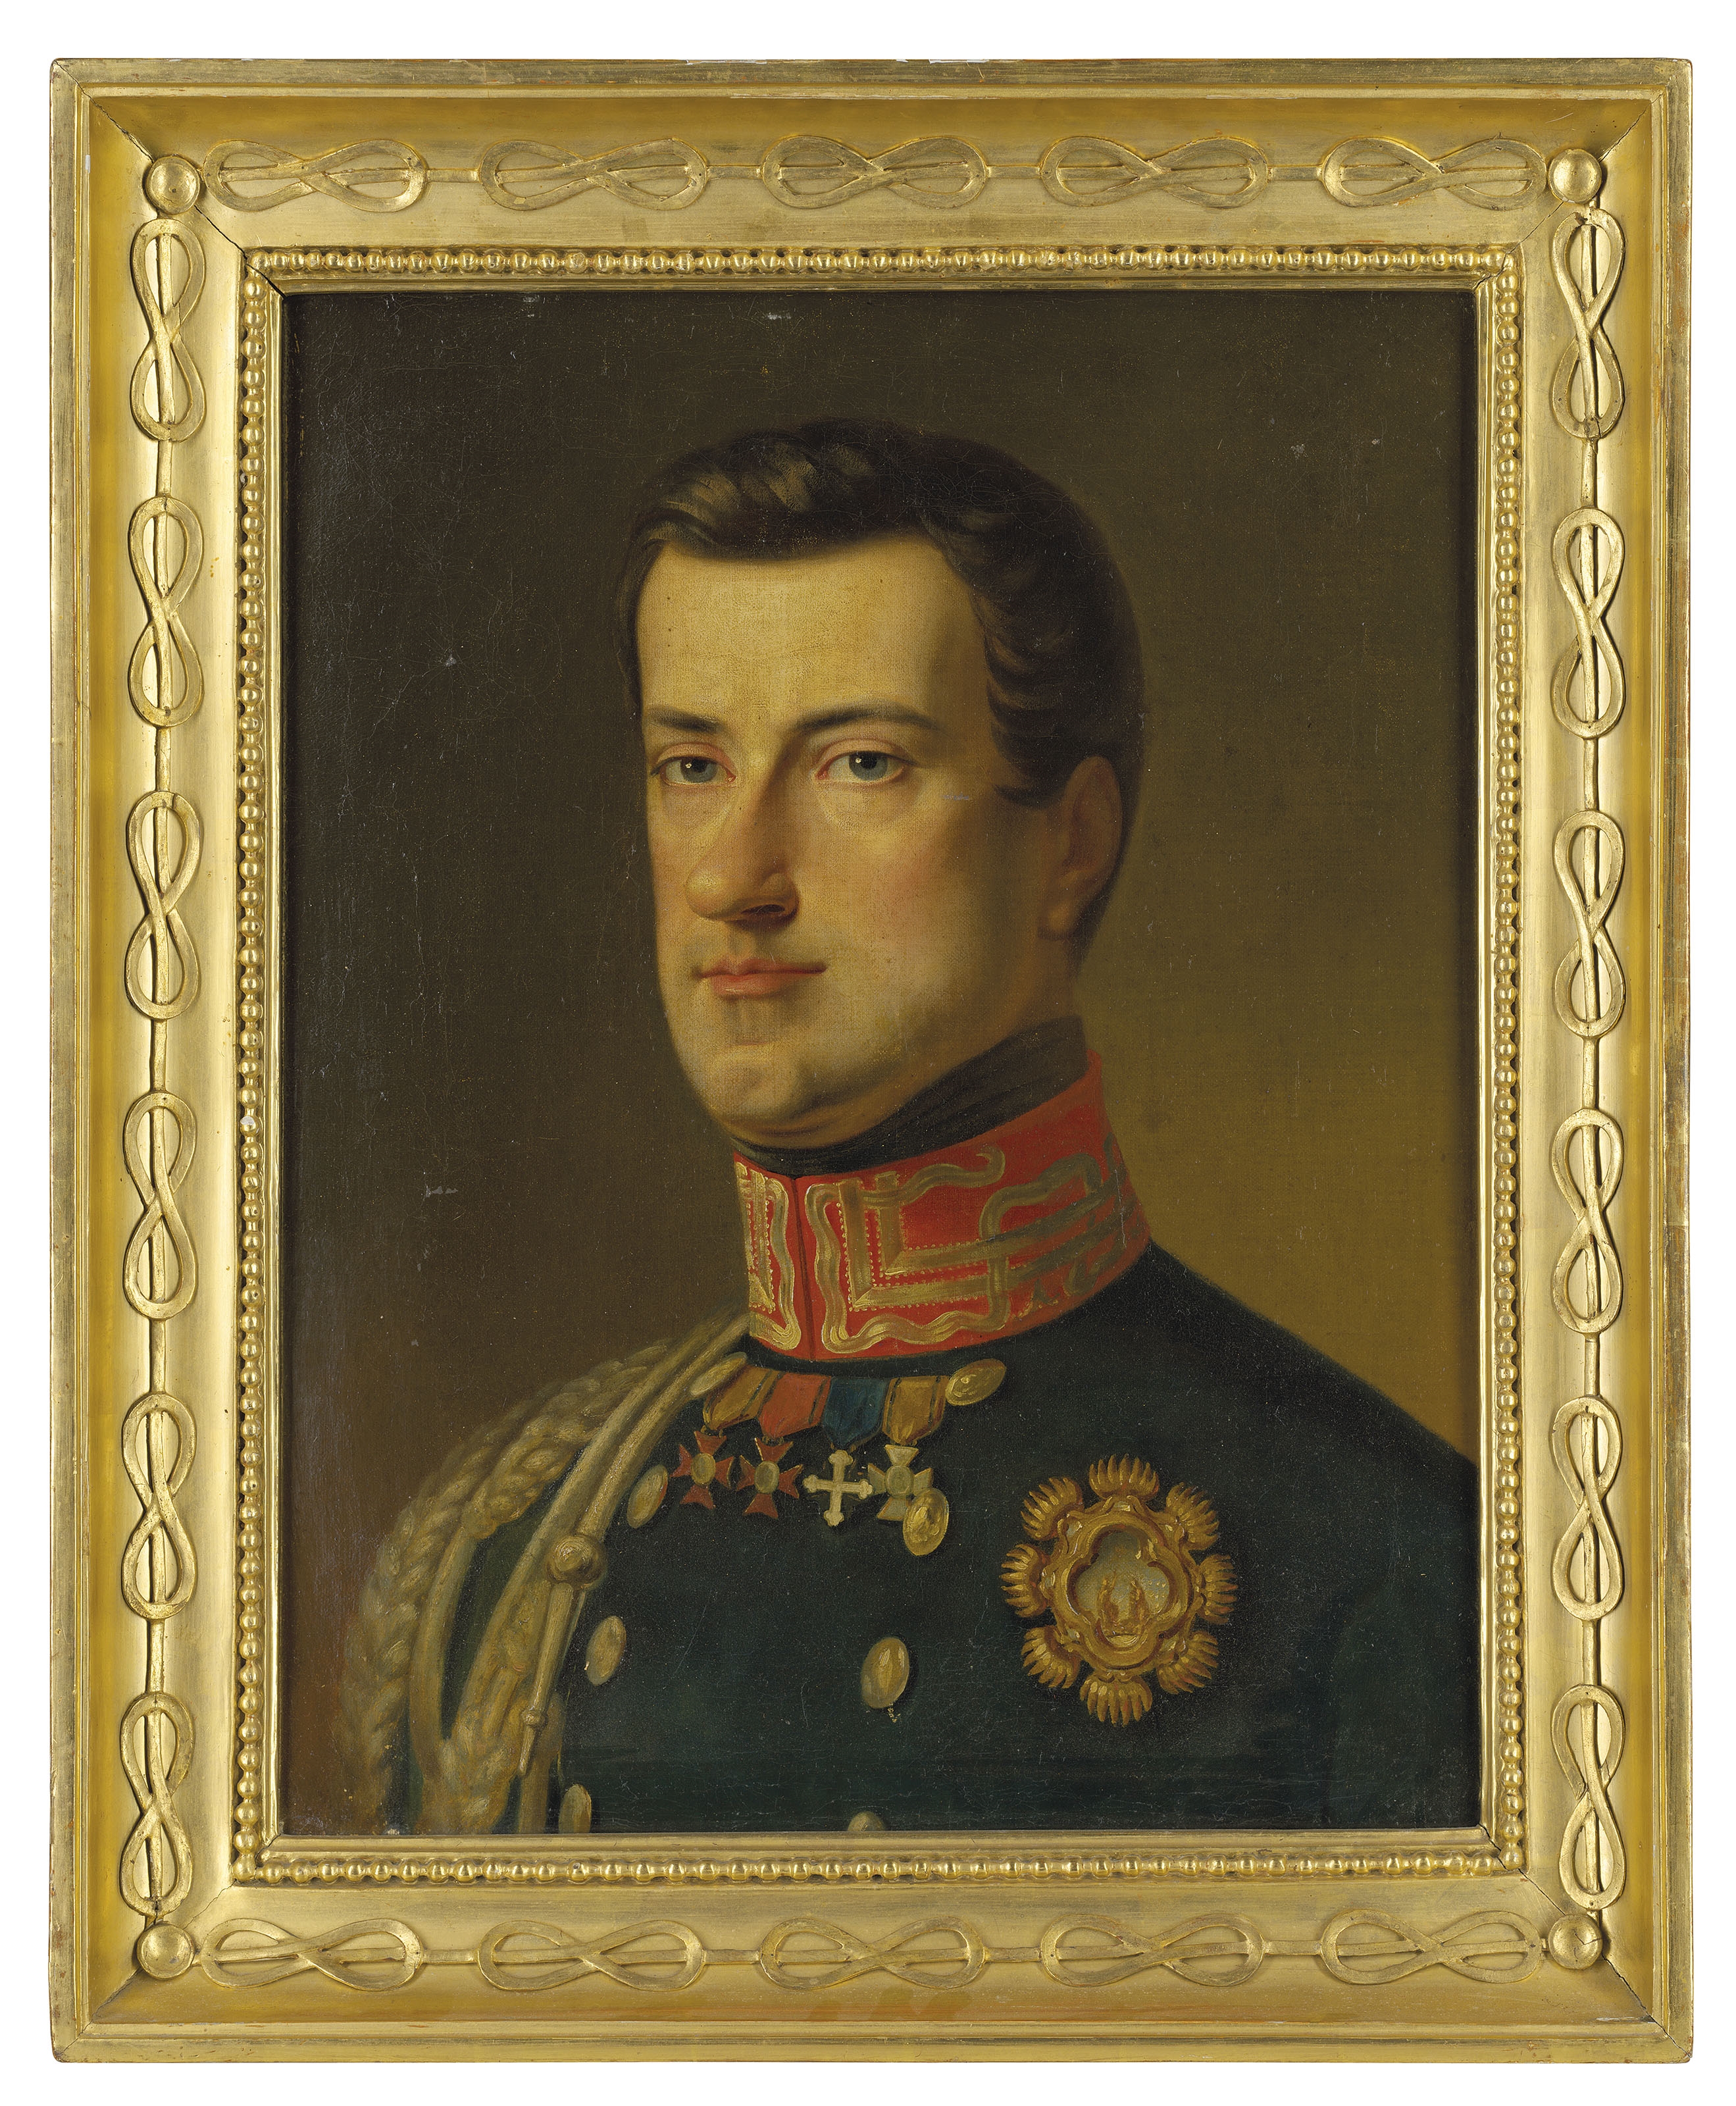 Portrait of Carlo Alberto, King of Sardinia-Piedmont (1798-1849) by Pietro Ayres